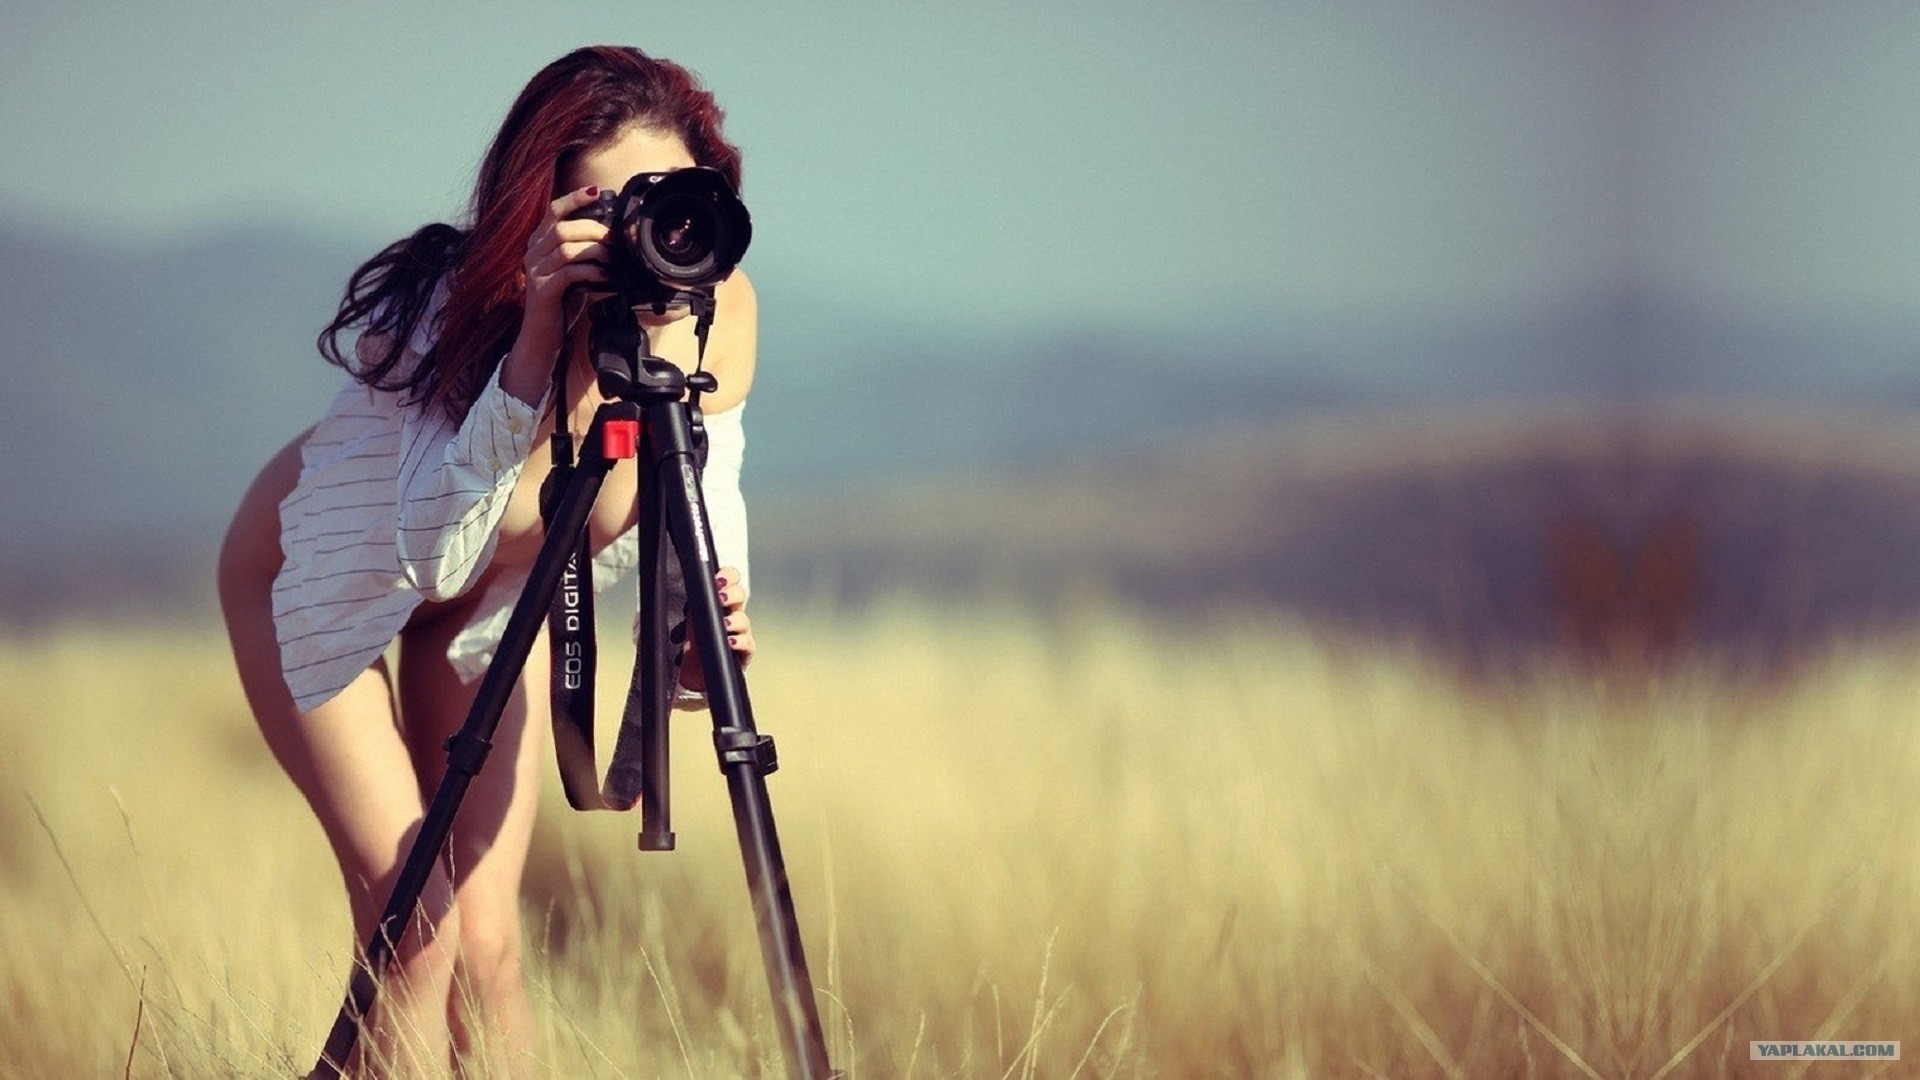 Amateur photographer guide